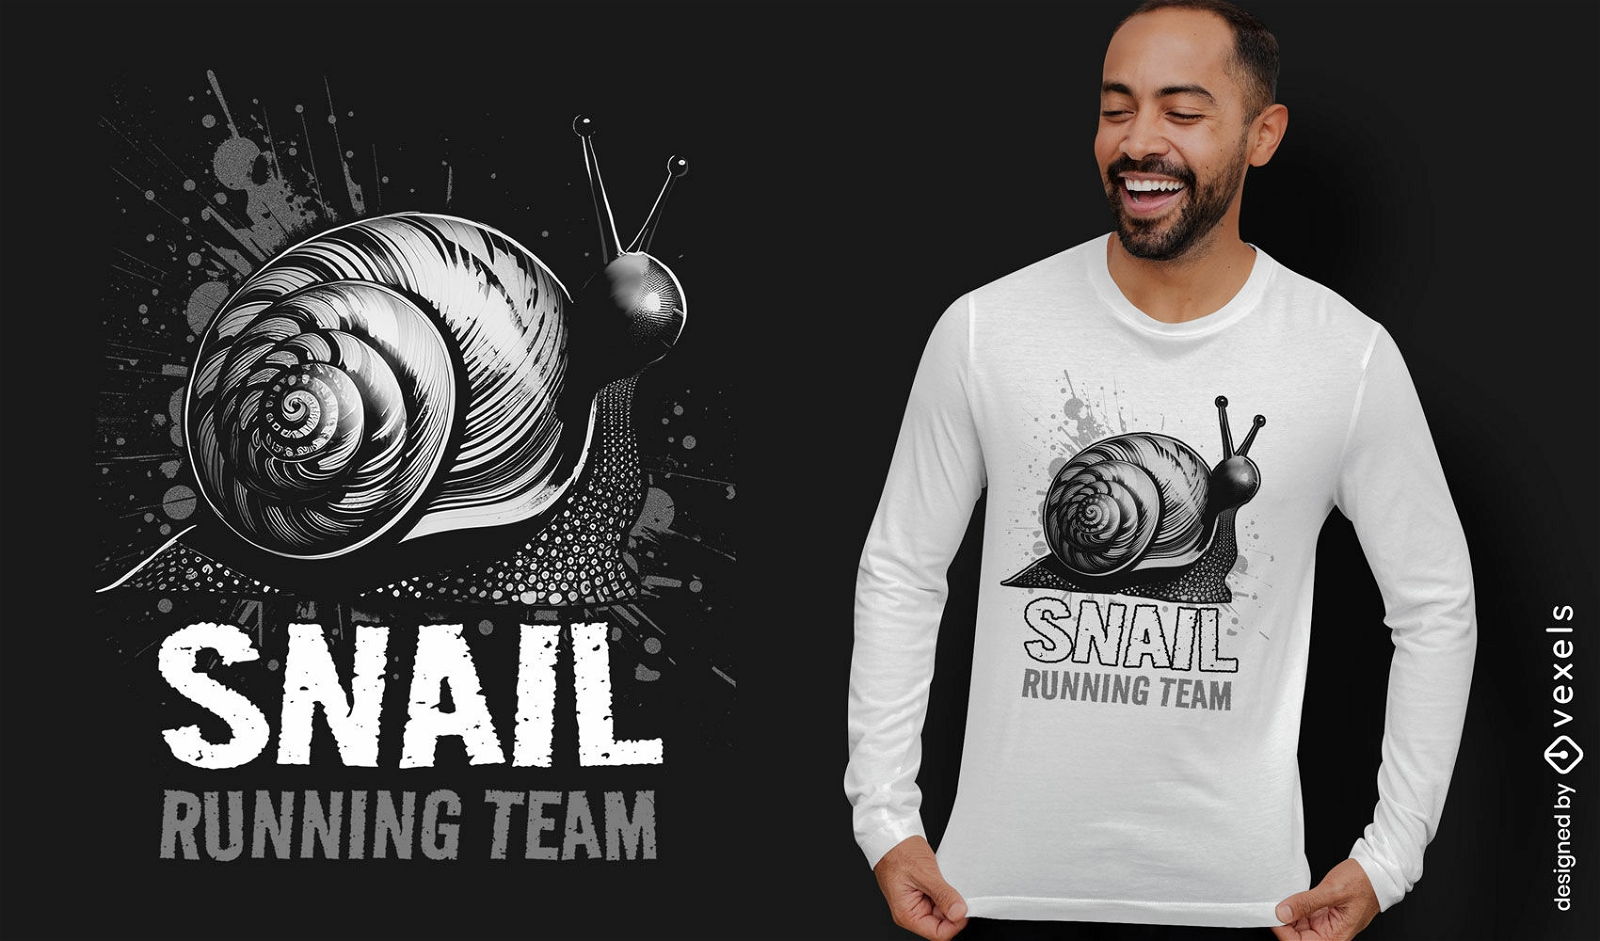 Snail running team t-shirt design